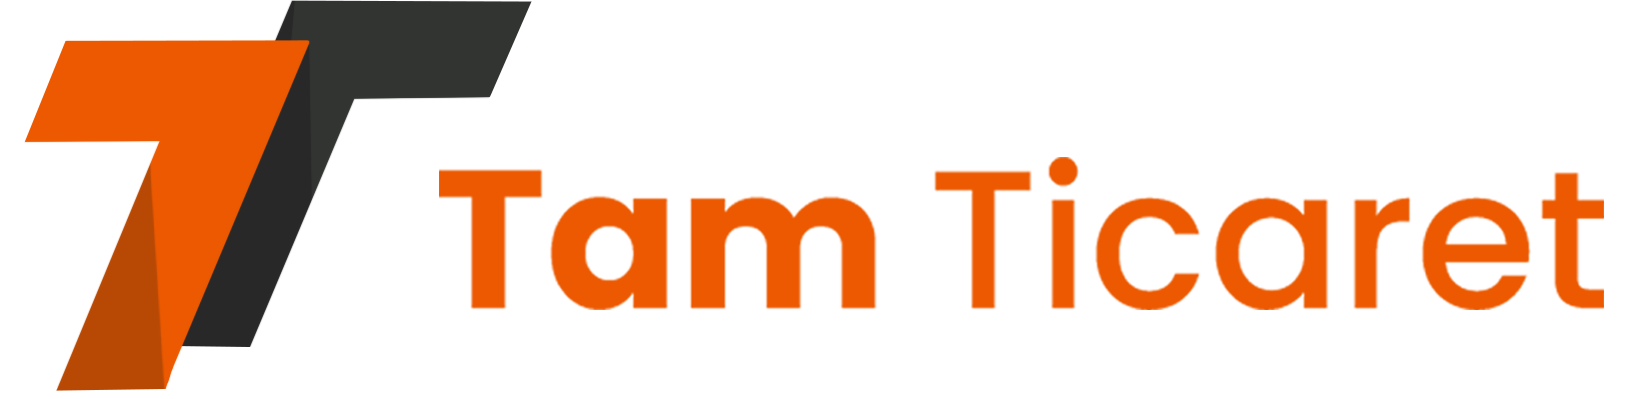 Tam Ticaret B2B Yazılımı Logo